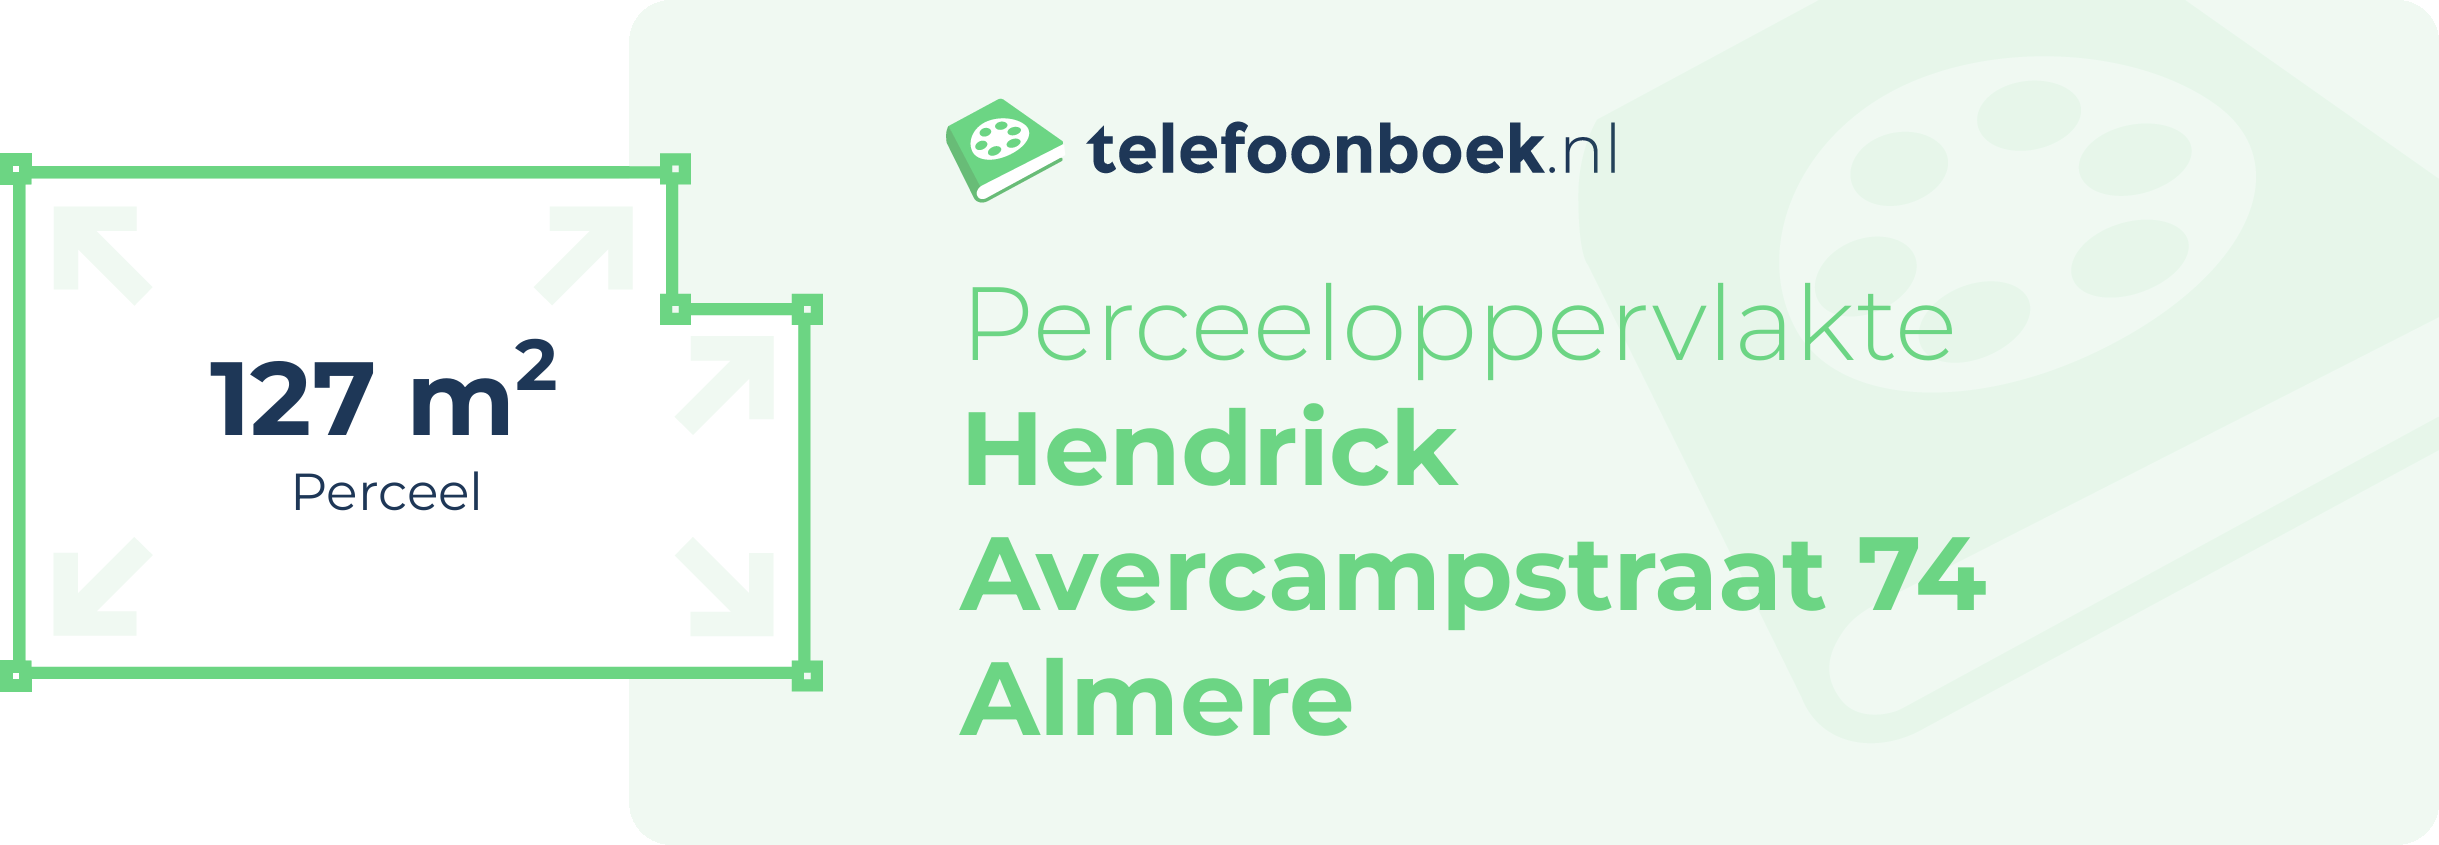 Perceeloppervlakte Hendrick Avercampstraat 74 Almere